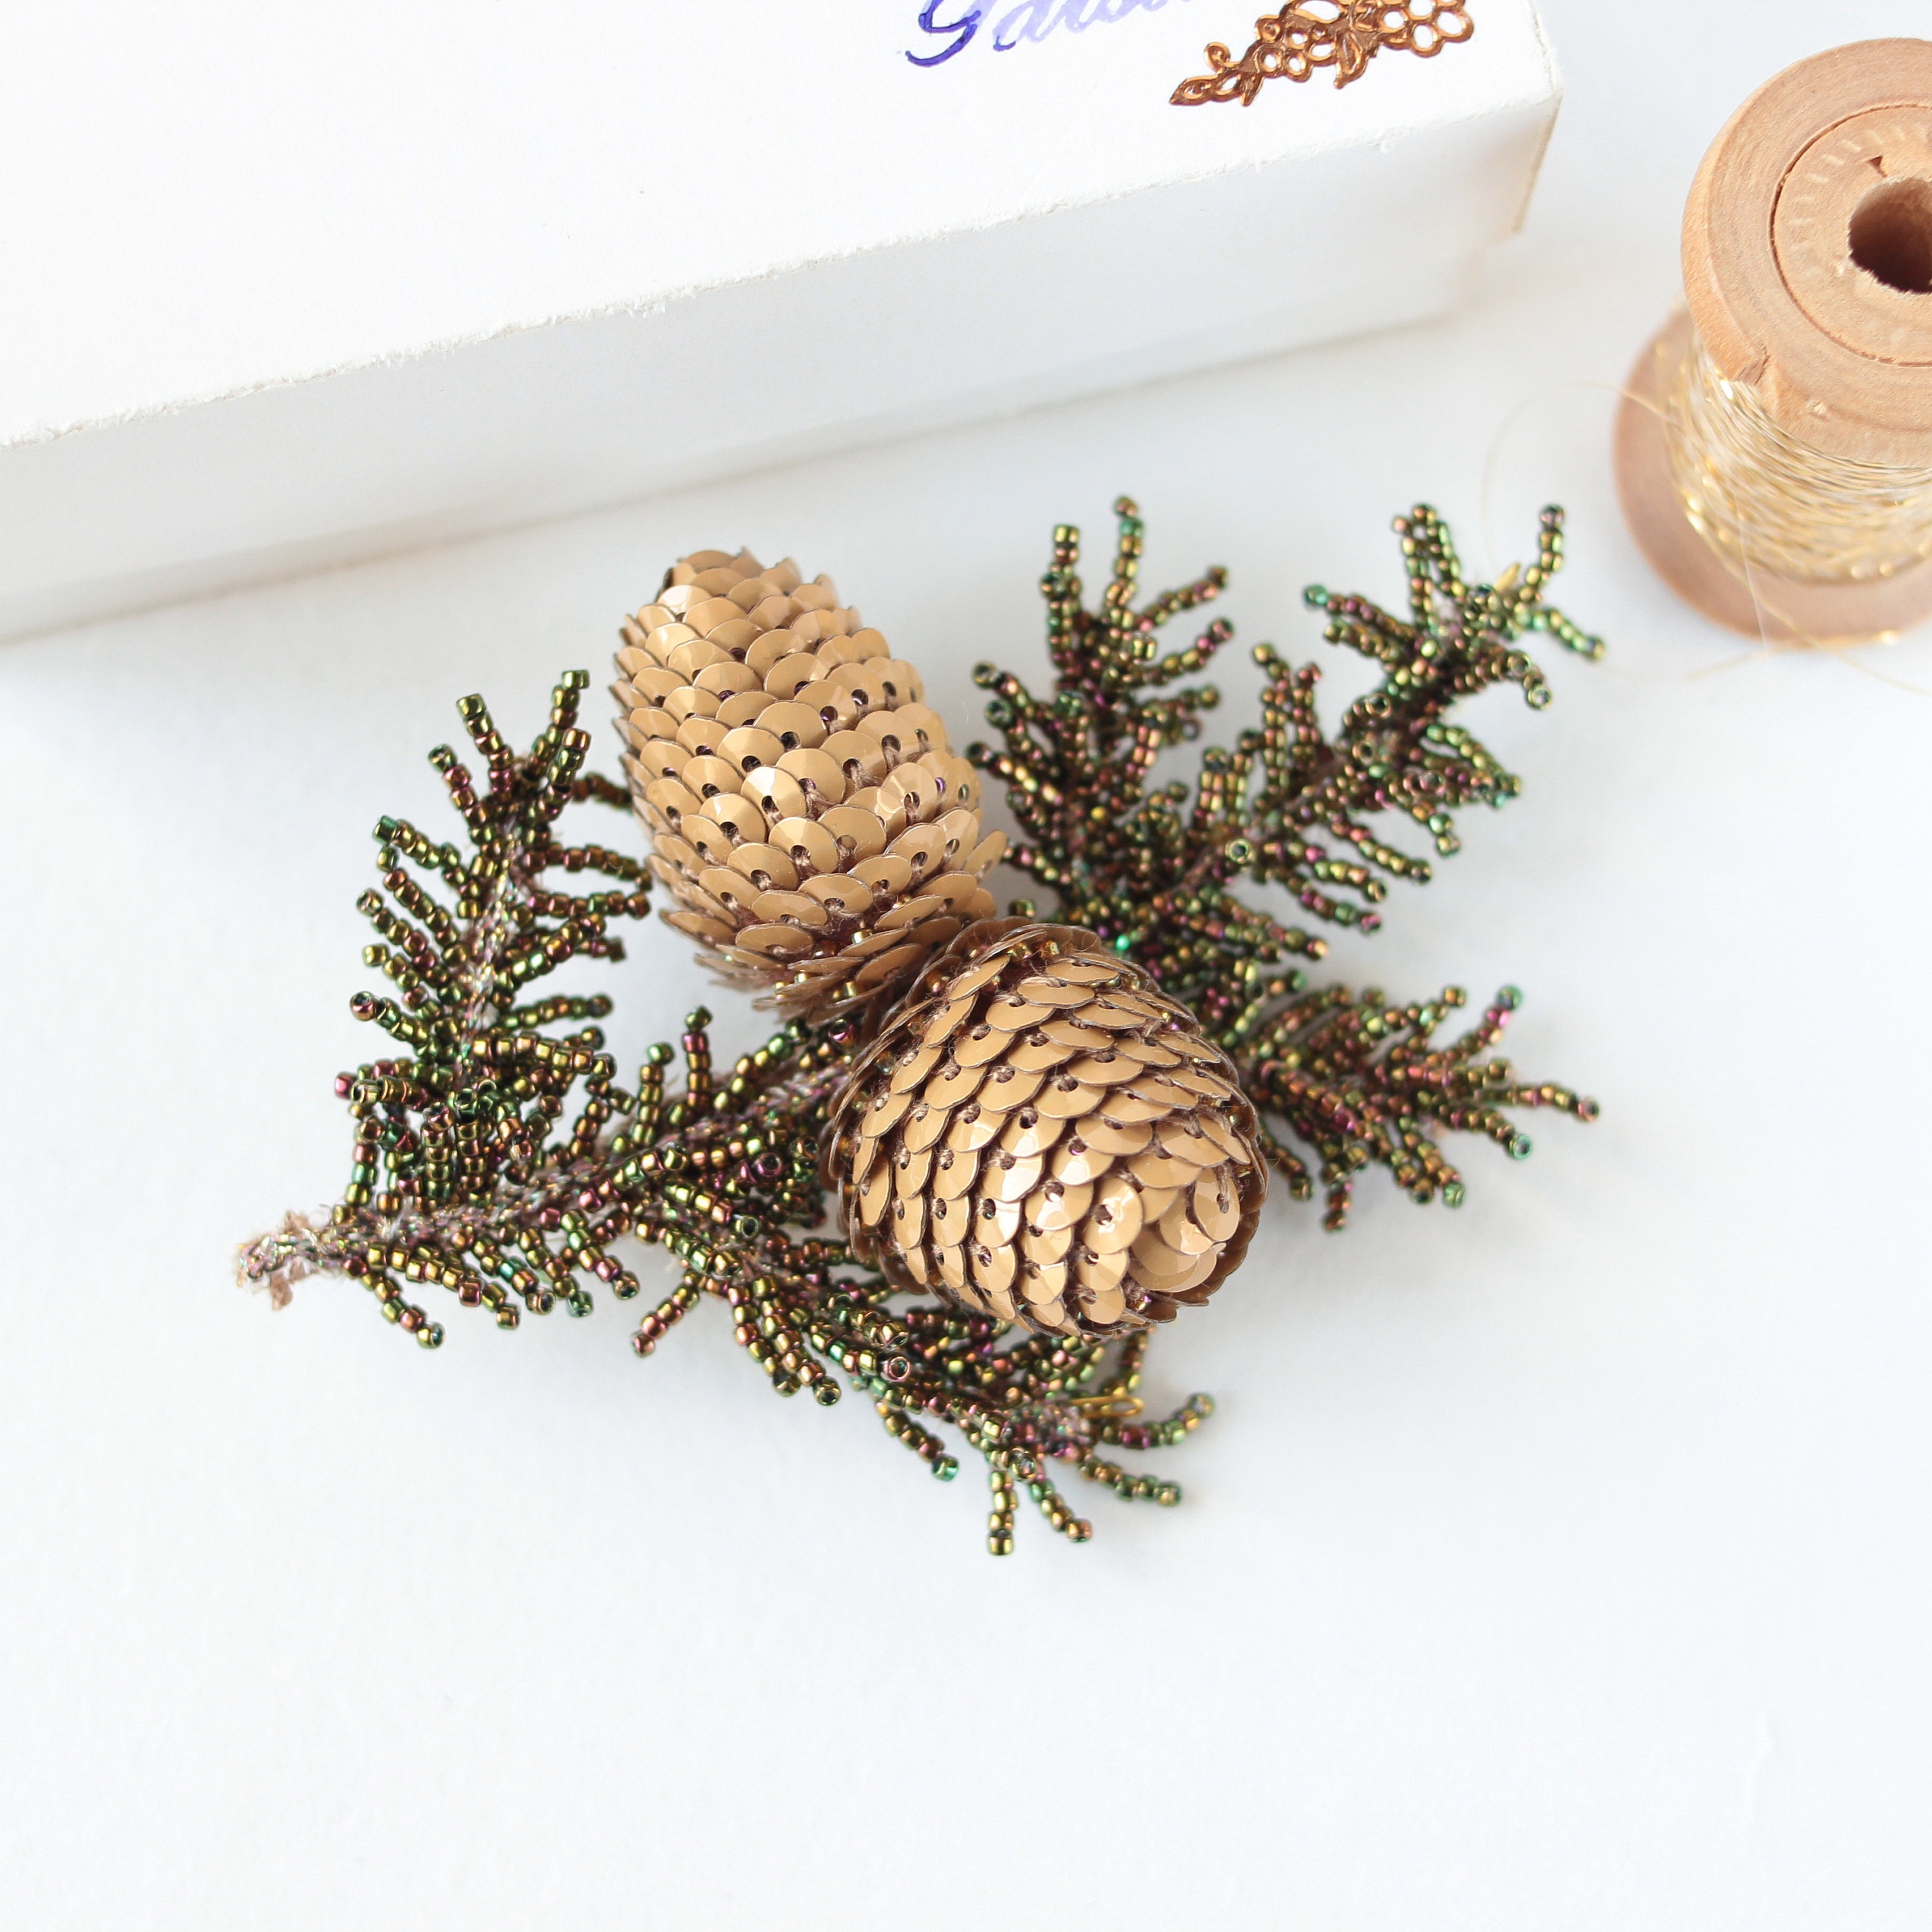 Handmade brooch Christmas tree made of beads🎄🥰 : r/crafts